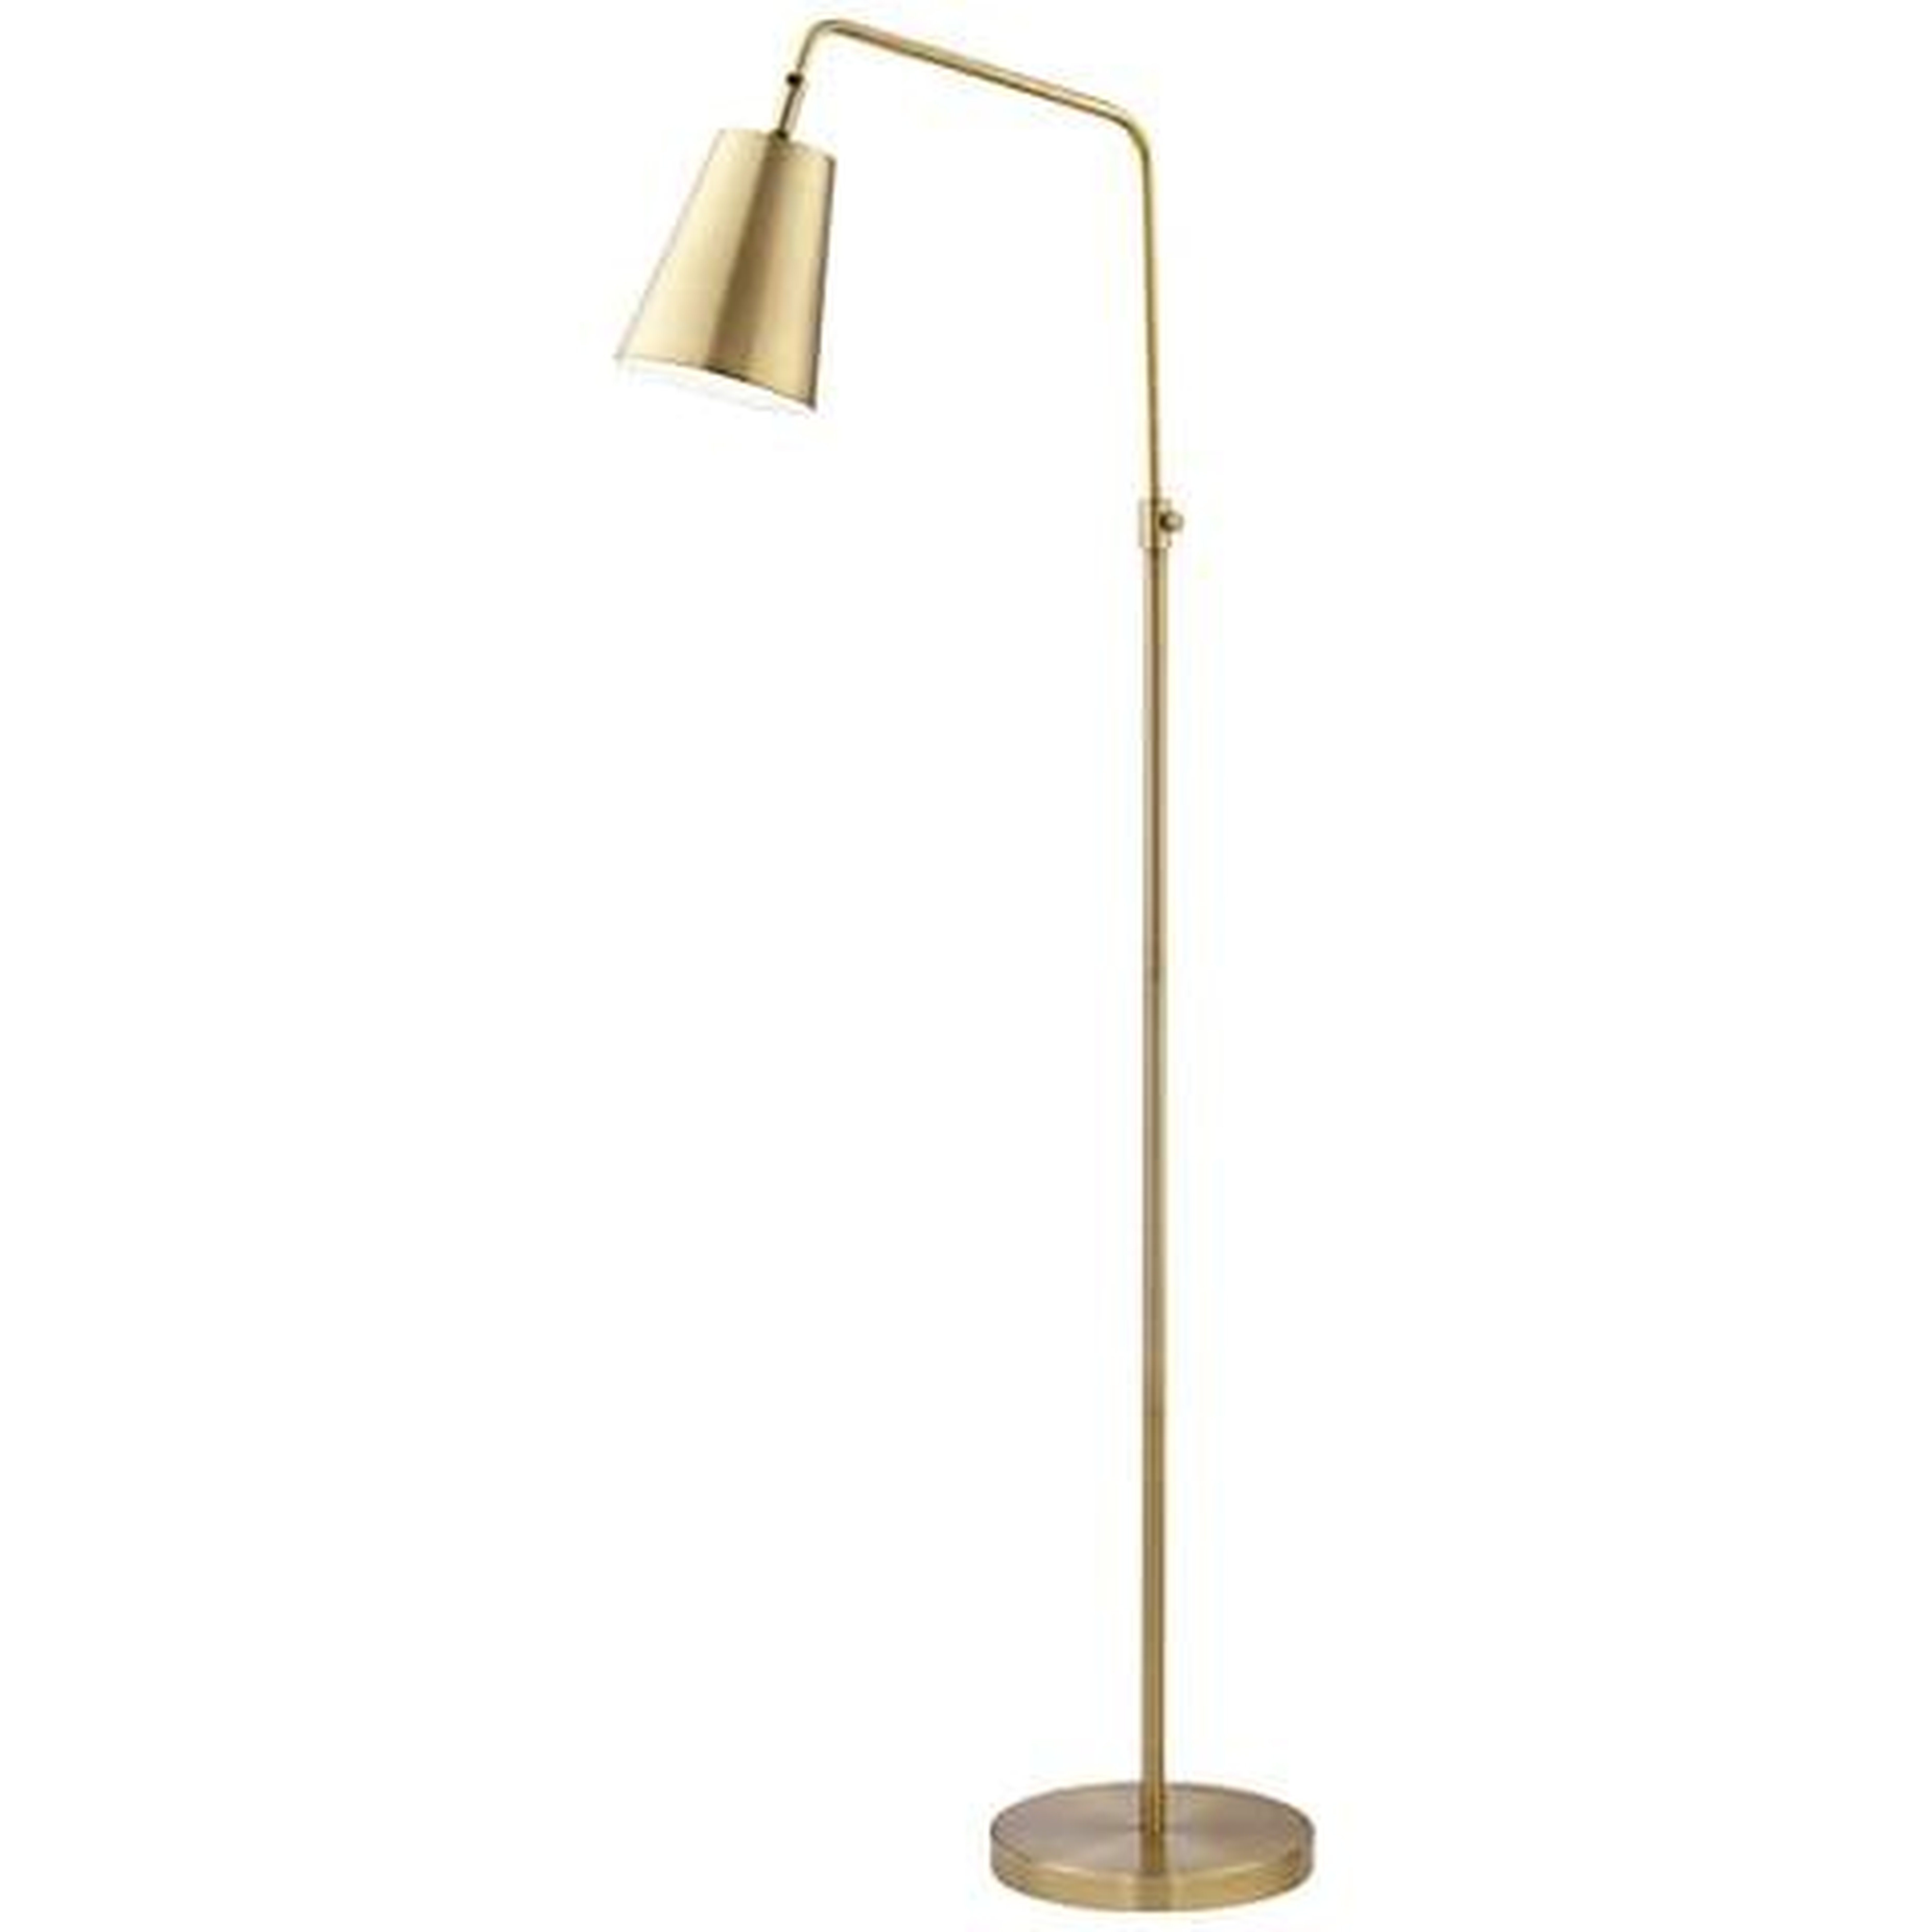 Pacific Coast Lighting Zella Adjustable Height Brass Downbridge Floor Lamp - Lamps Plus